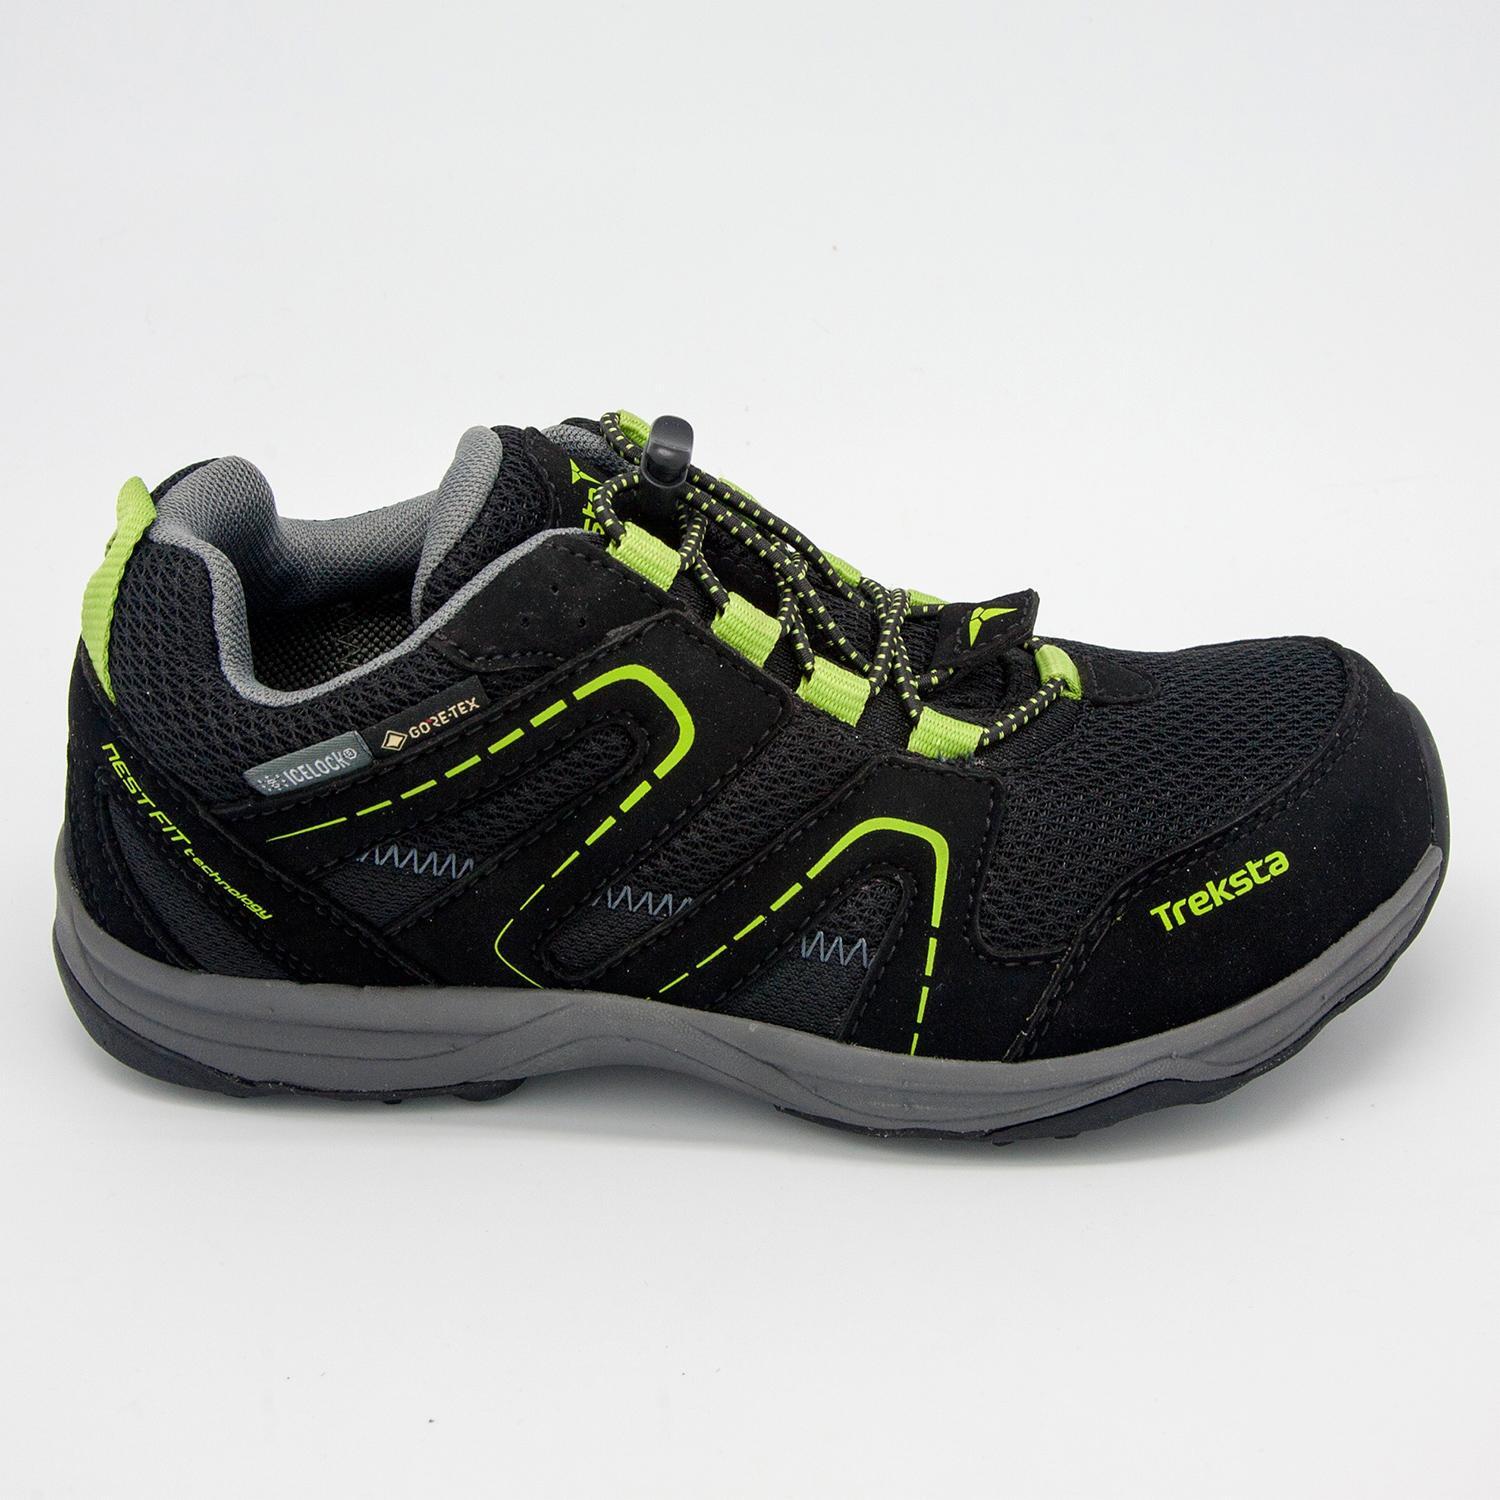 Treksta Oxxy GTX - Noir - Chaussures de trekking garçon sports taille 36